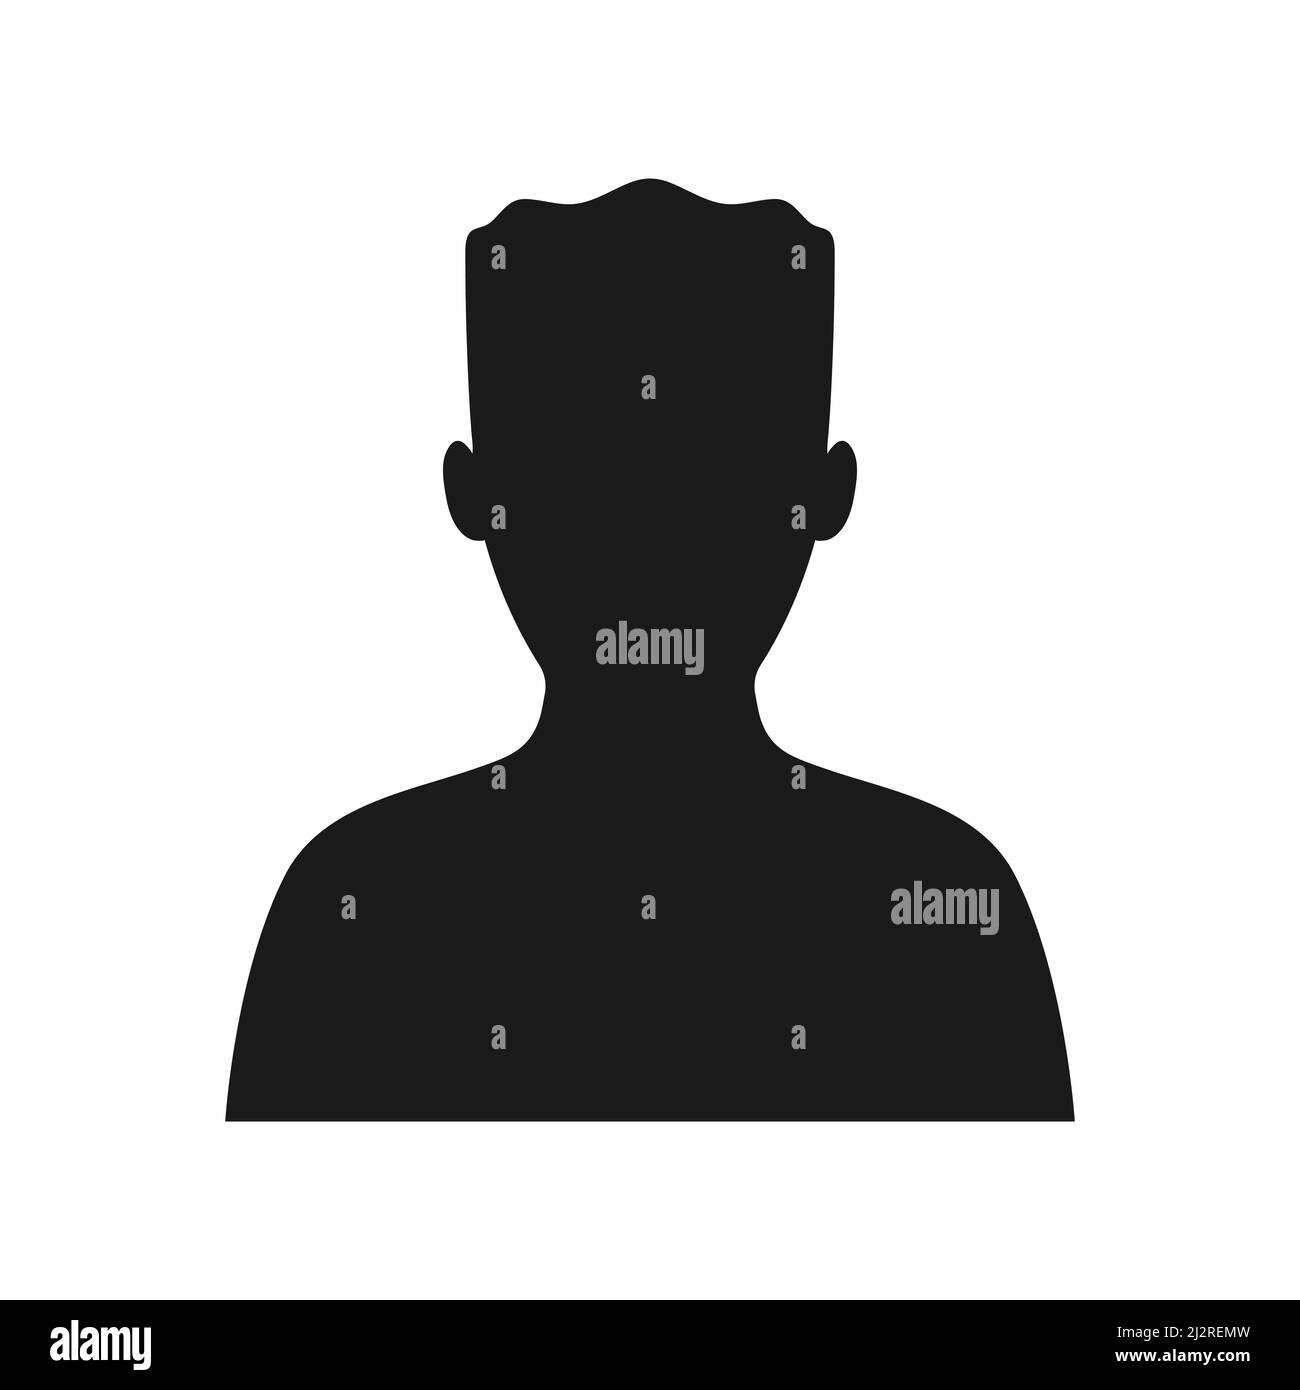 Männliche Silhouette. Schwarzes Symbol für Person. Abbildung des Profils eines Mannes. Menschlicher Avatar. Stock Vektor